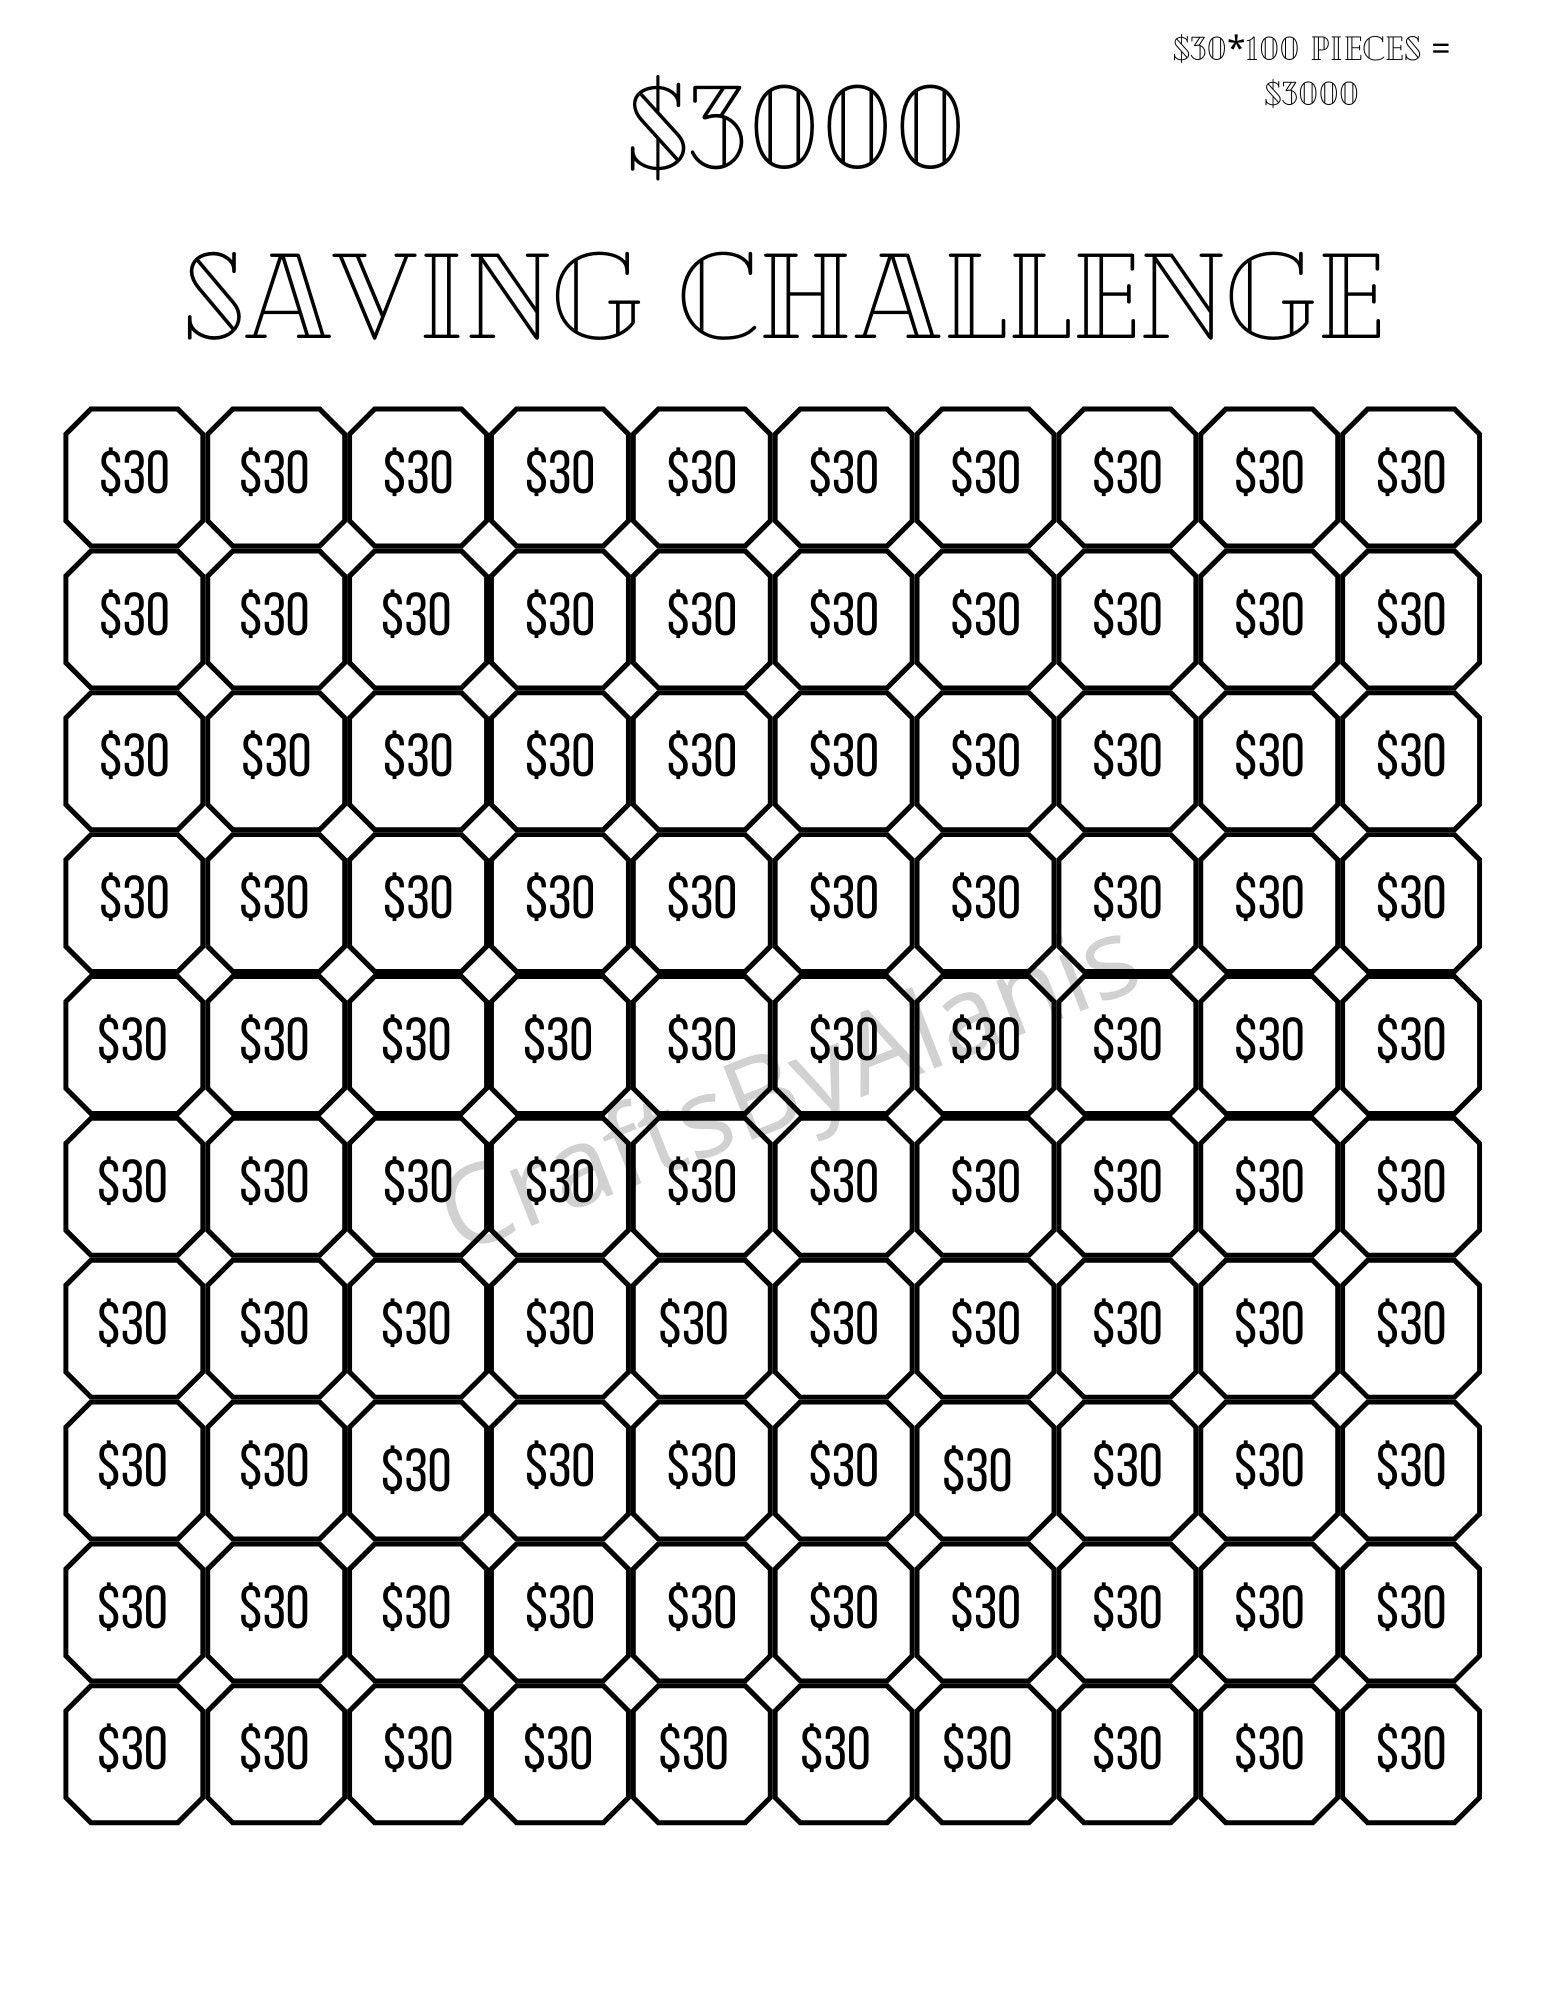 3000-challenge-printable-3000-savings-challenge-savings-etsy